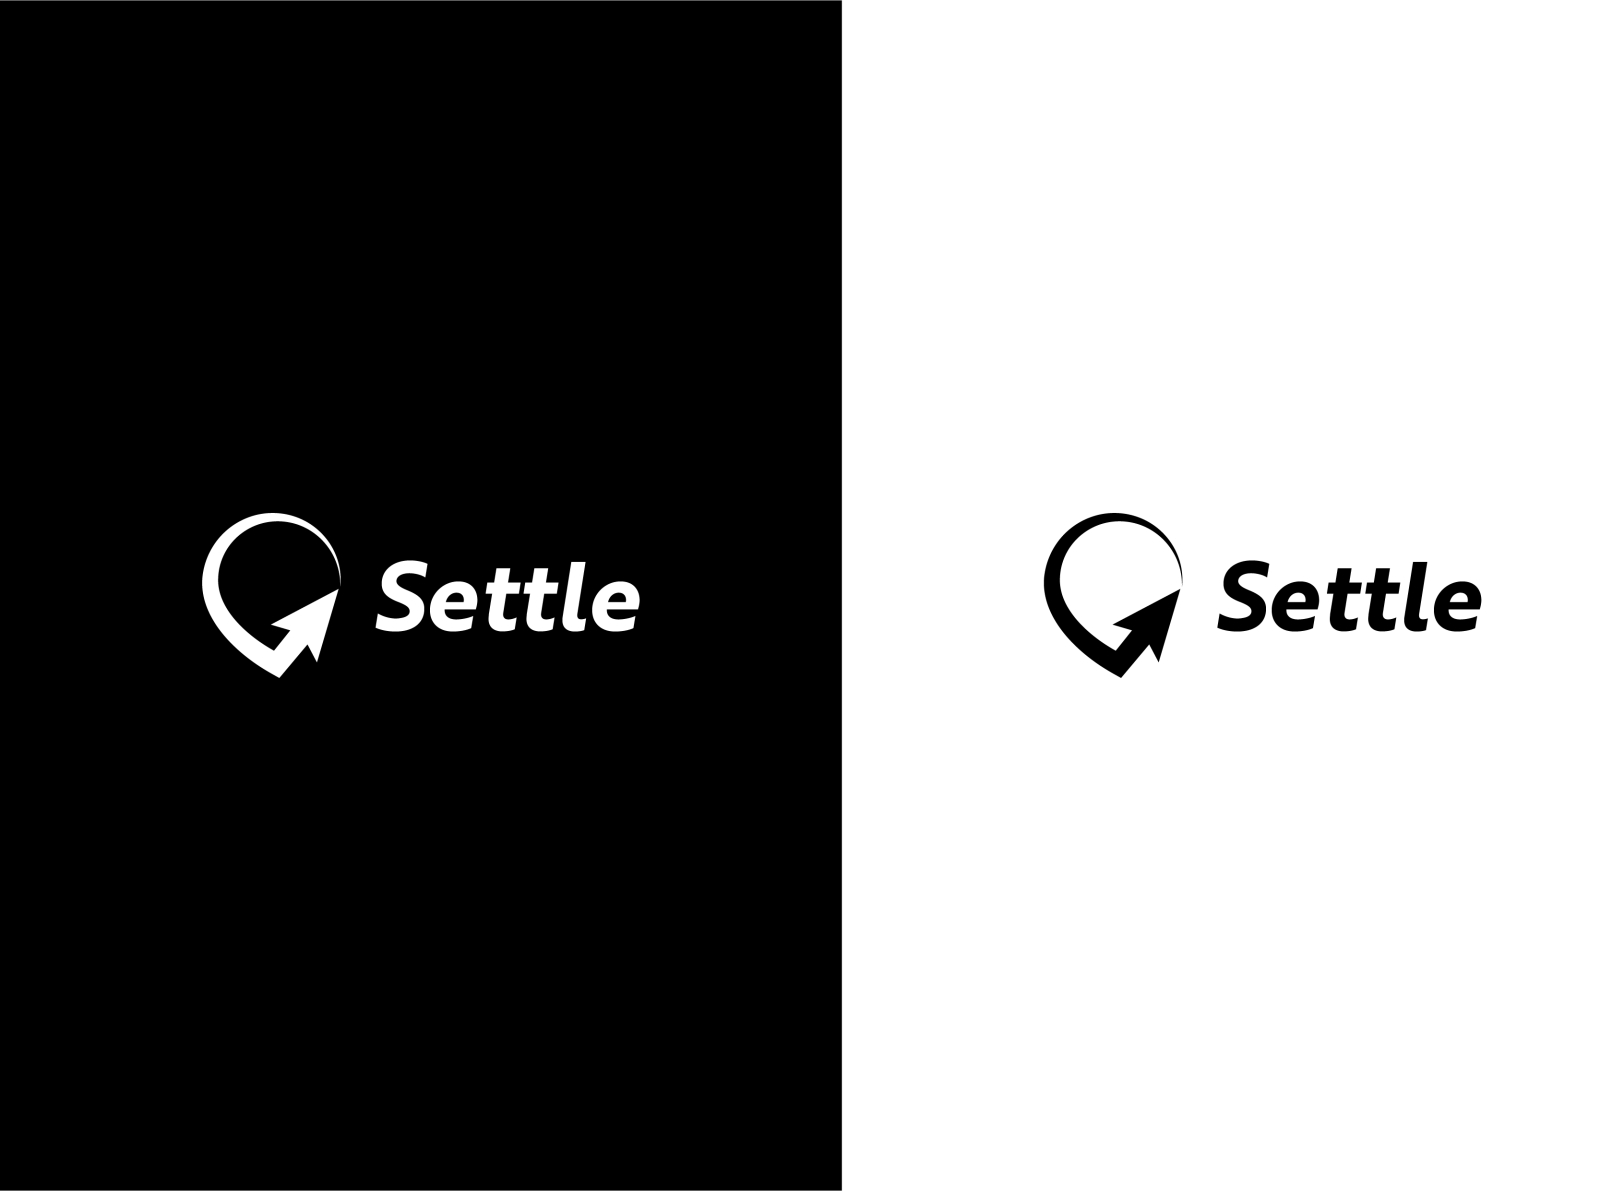 Settle App - Branding kit by Karan on Dribbble